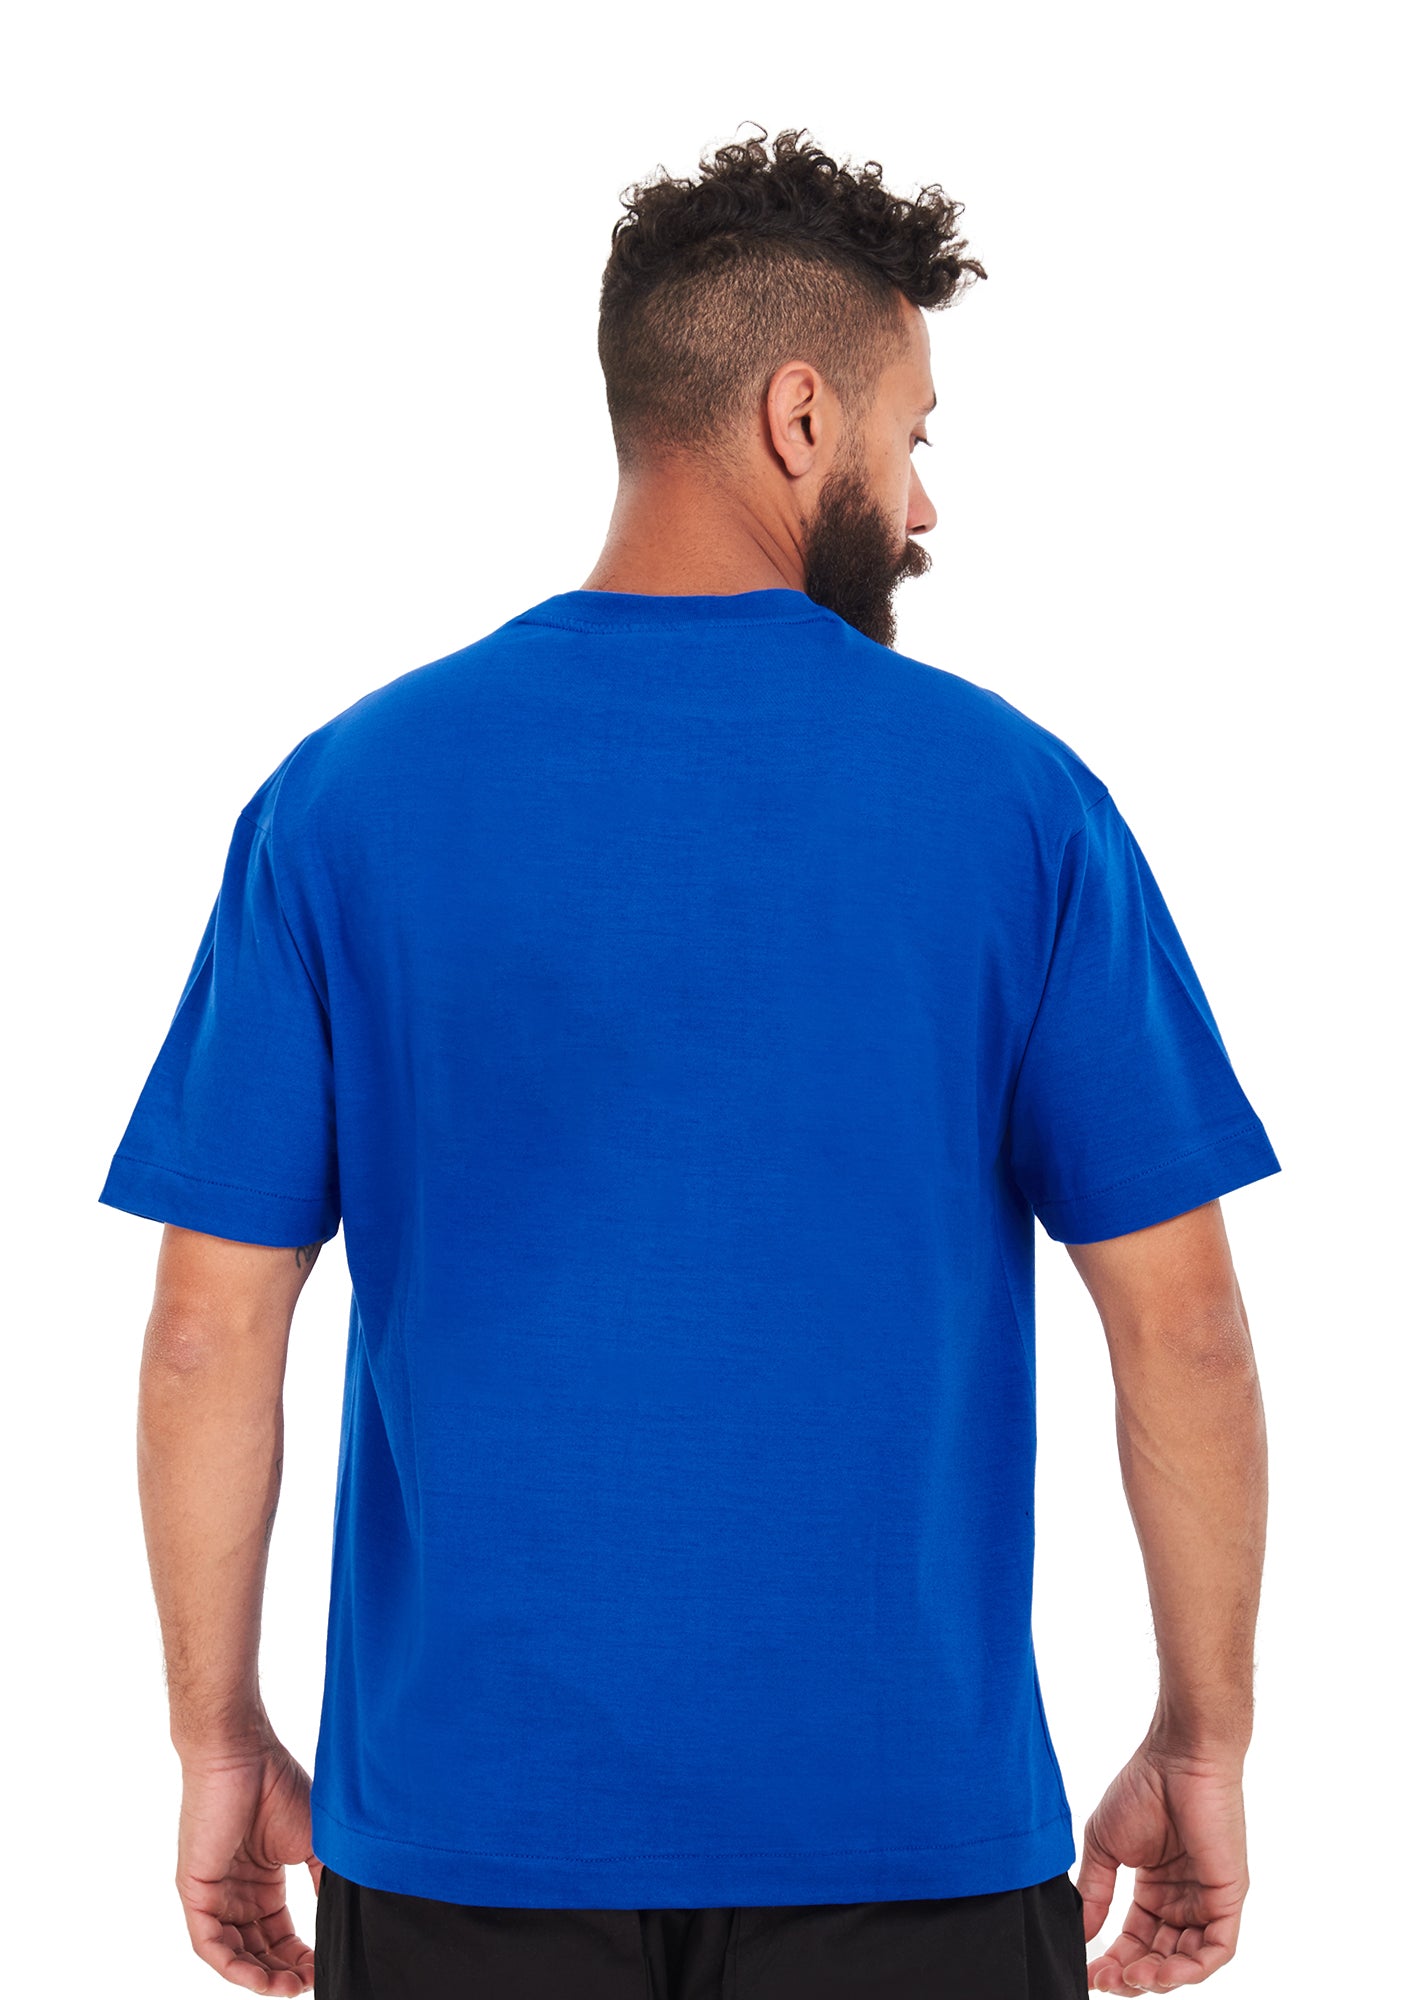 Oversized plain Royal blue T-shirt .